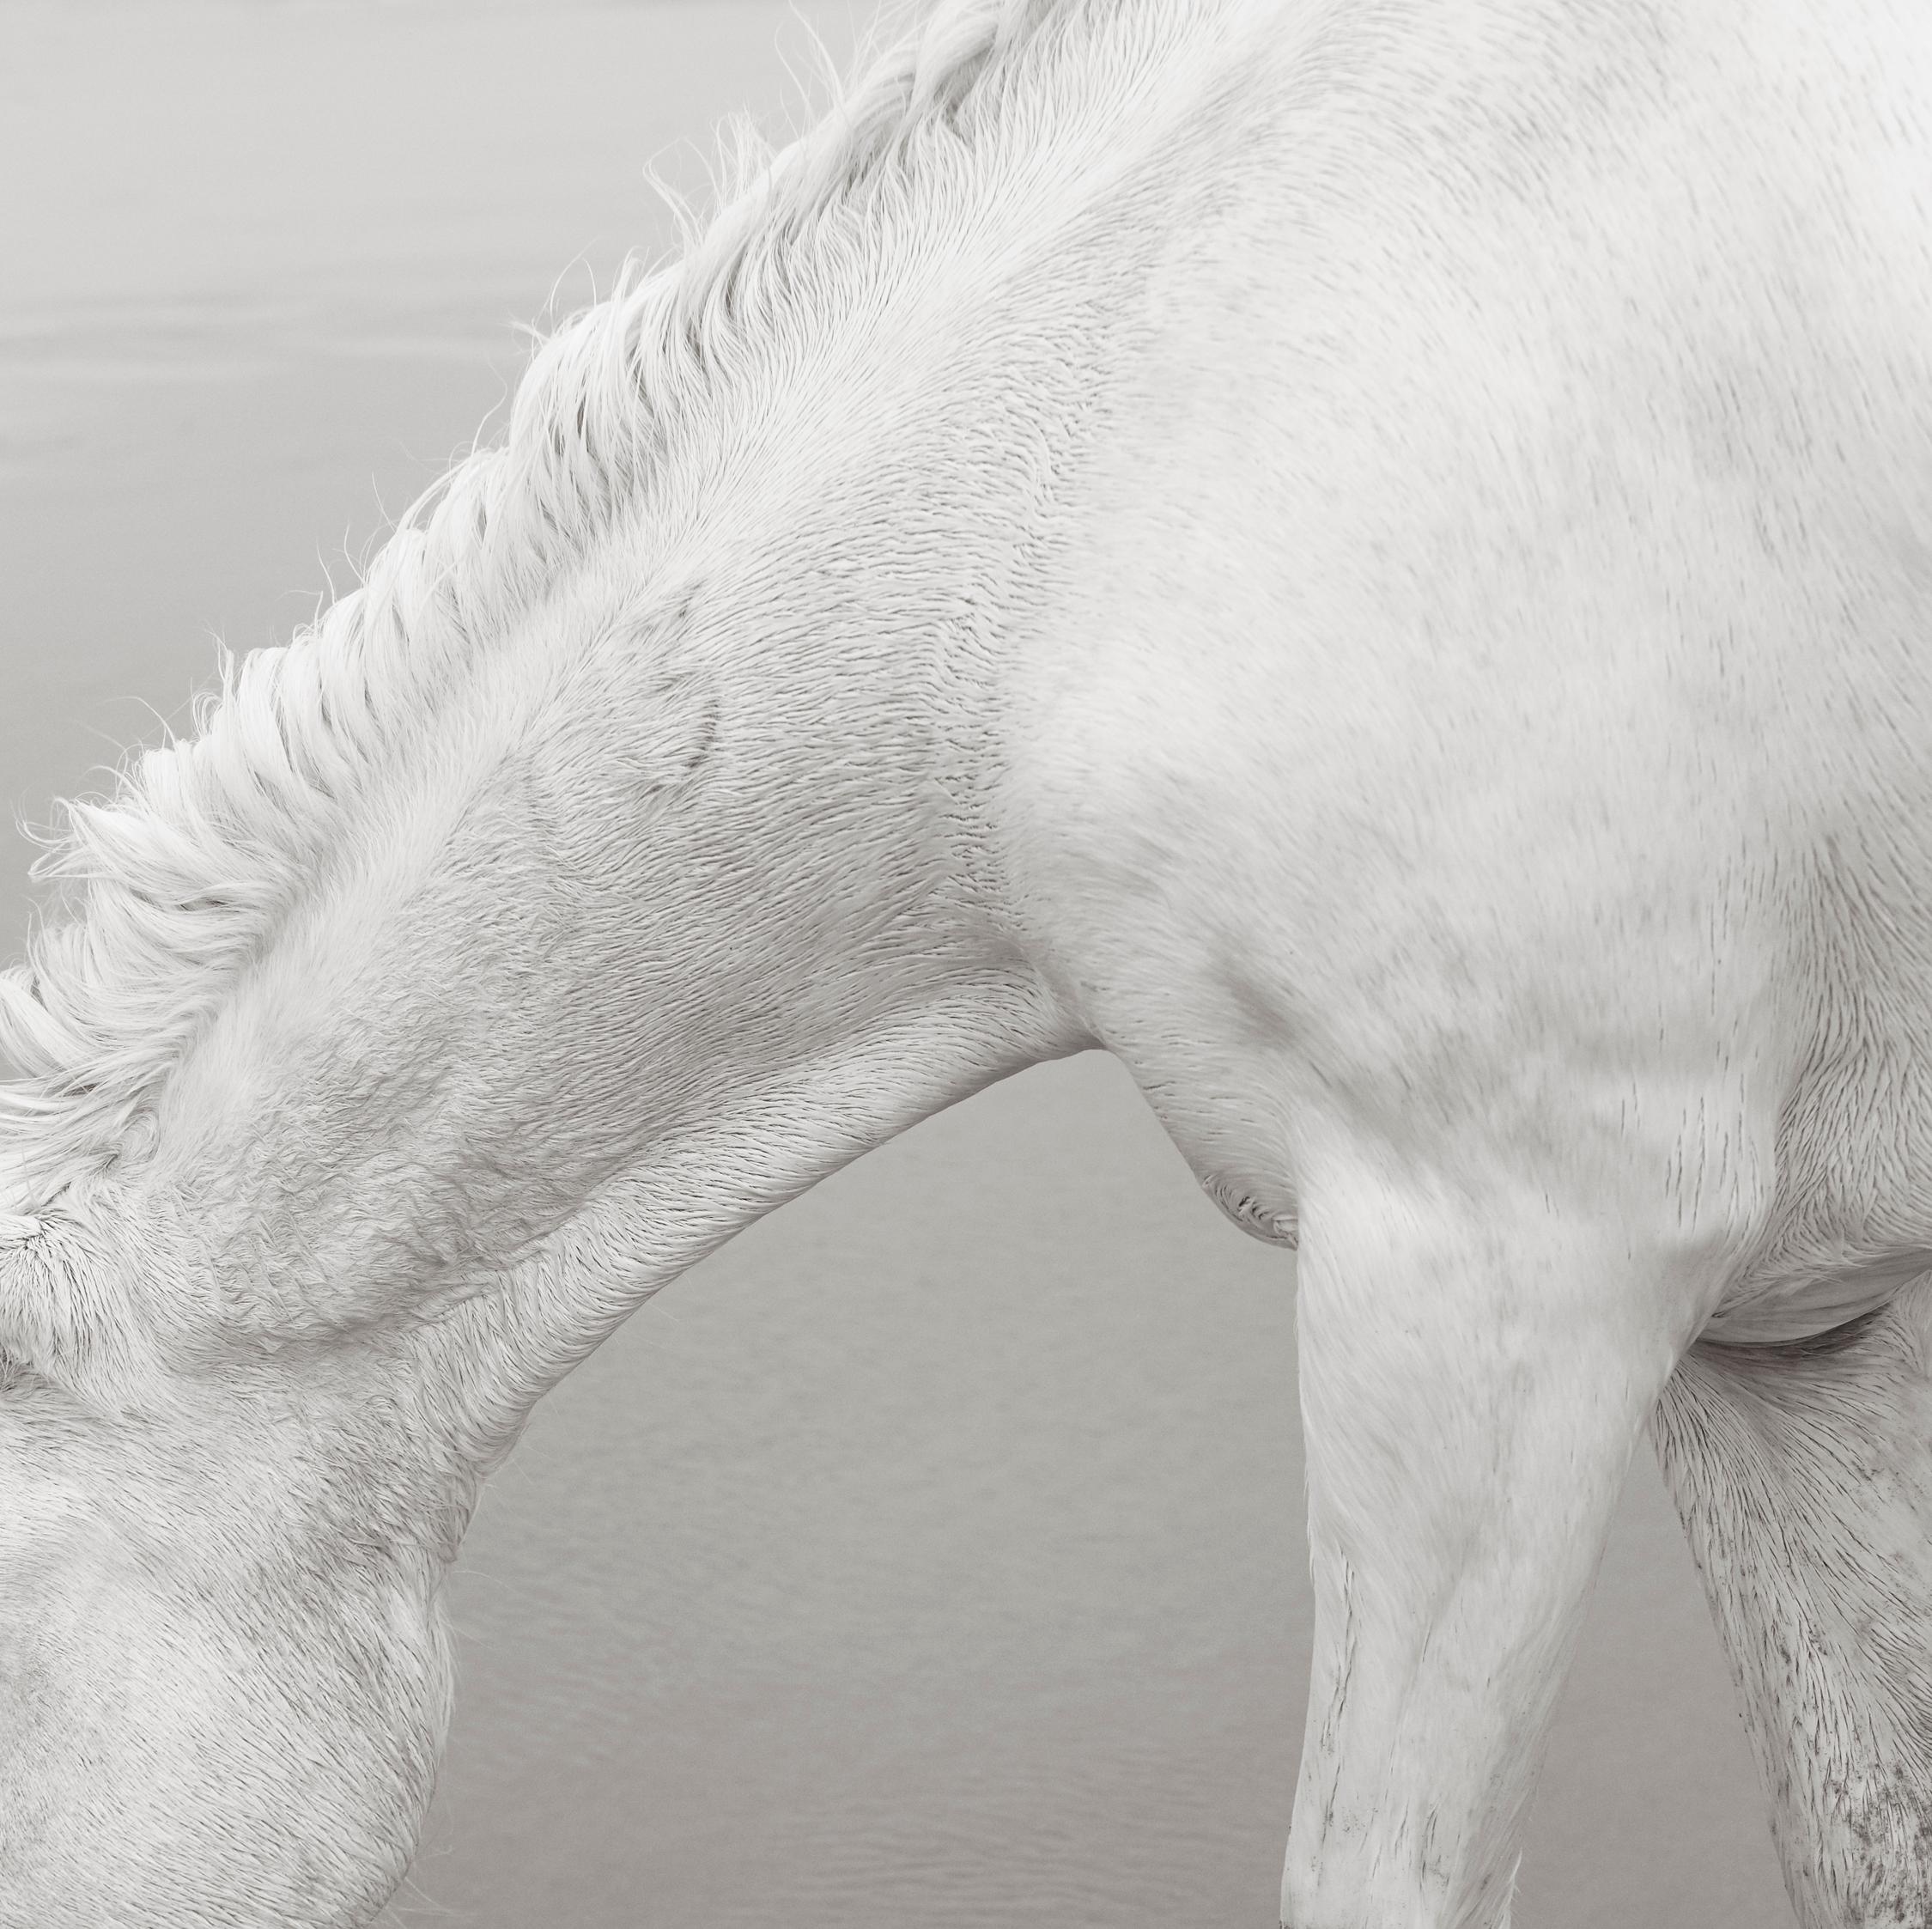 Drew Doggett Black and White Photograph – Der schöne, zarte und starke Hals eines ganz weißen Camargue-Pferdes mit einem b